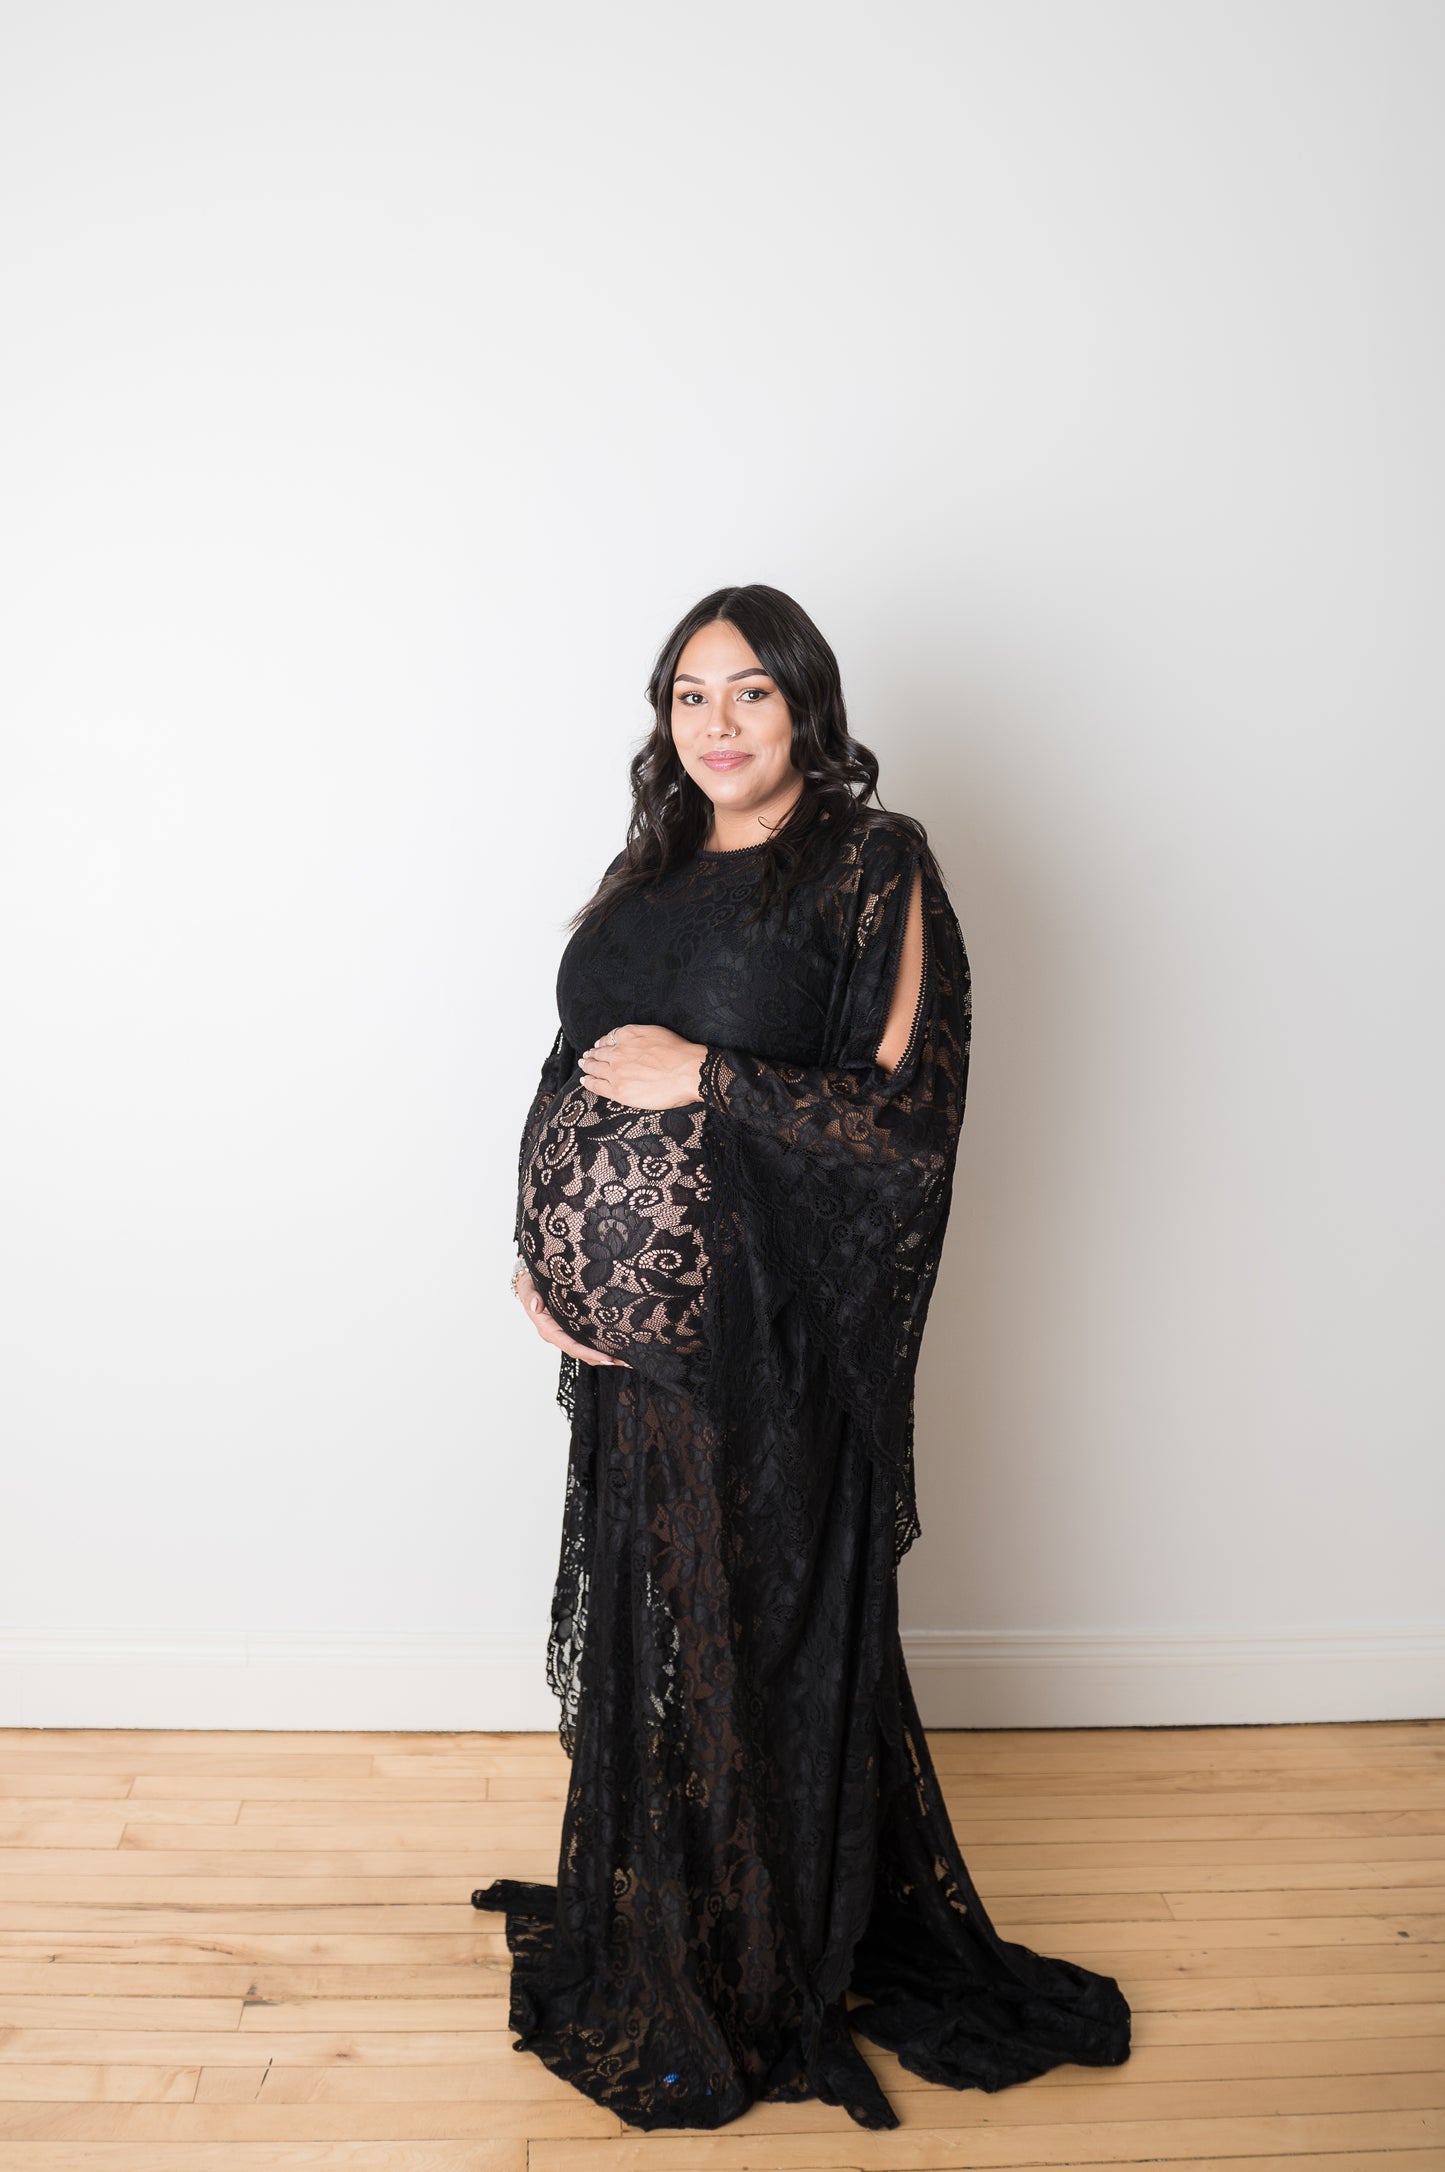 "Hadley" Black Lace Maternity Dress Split Side Bell Sleeve Gown